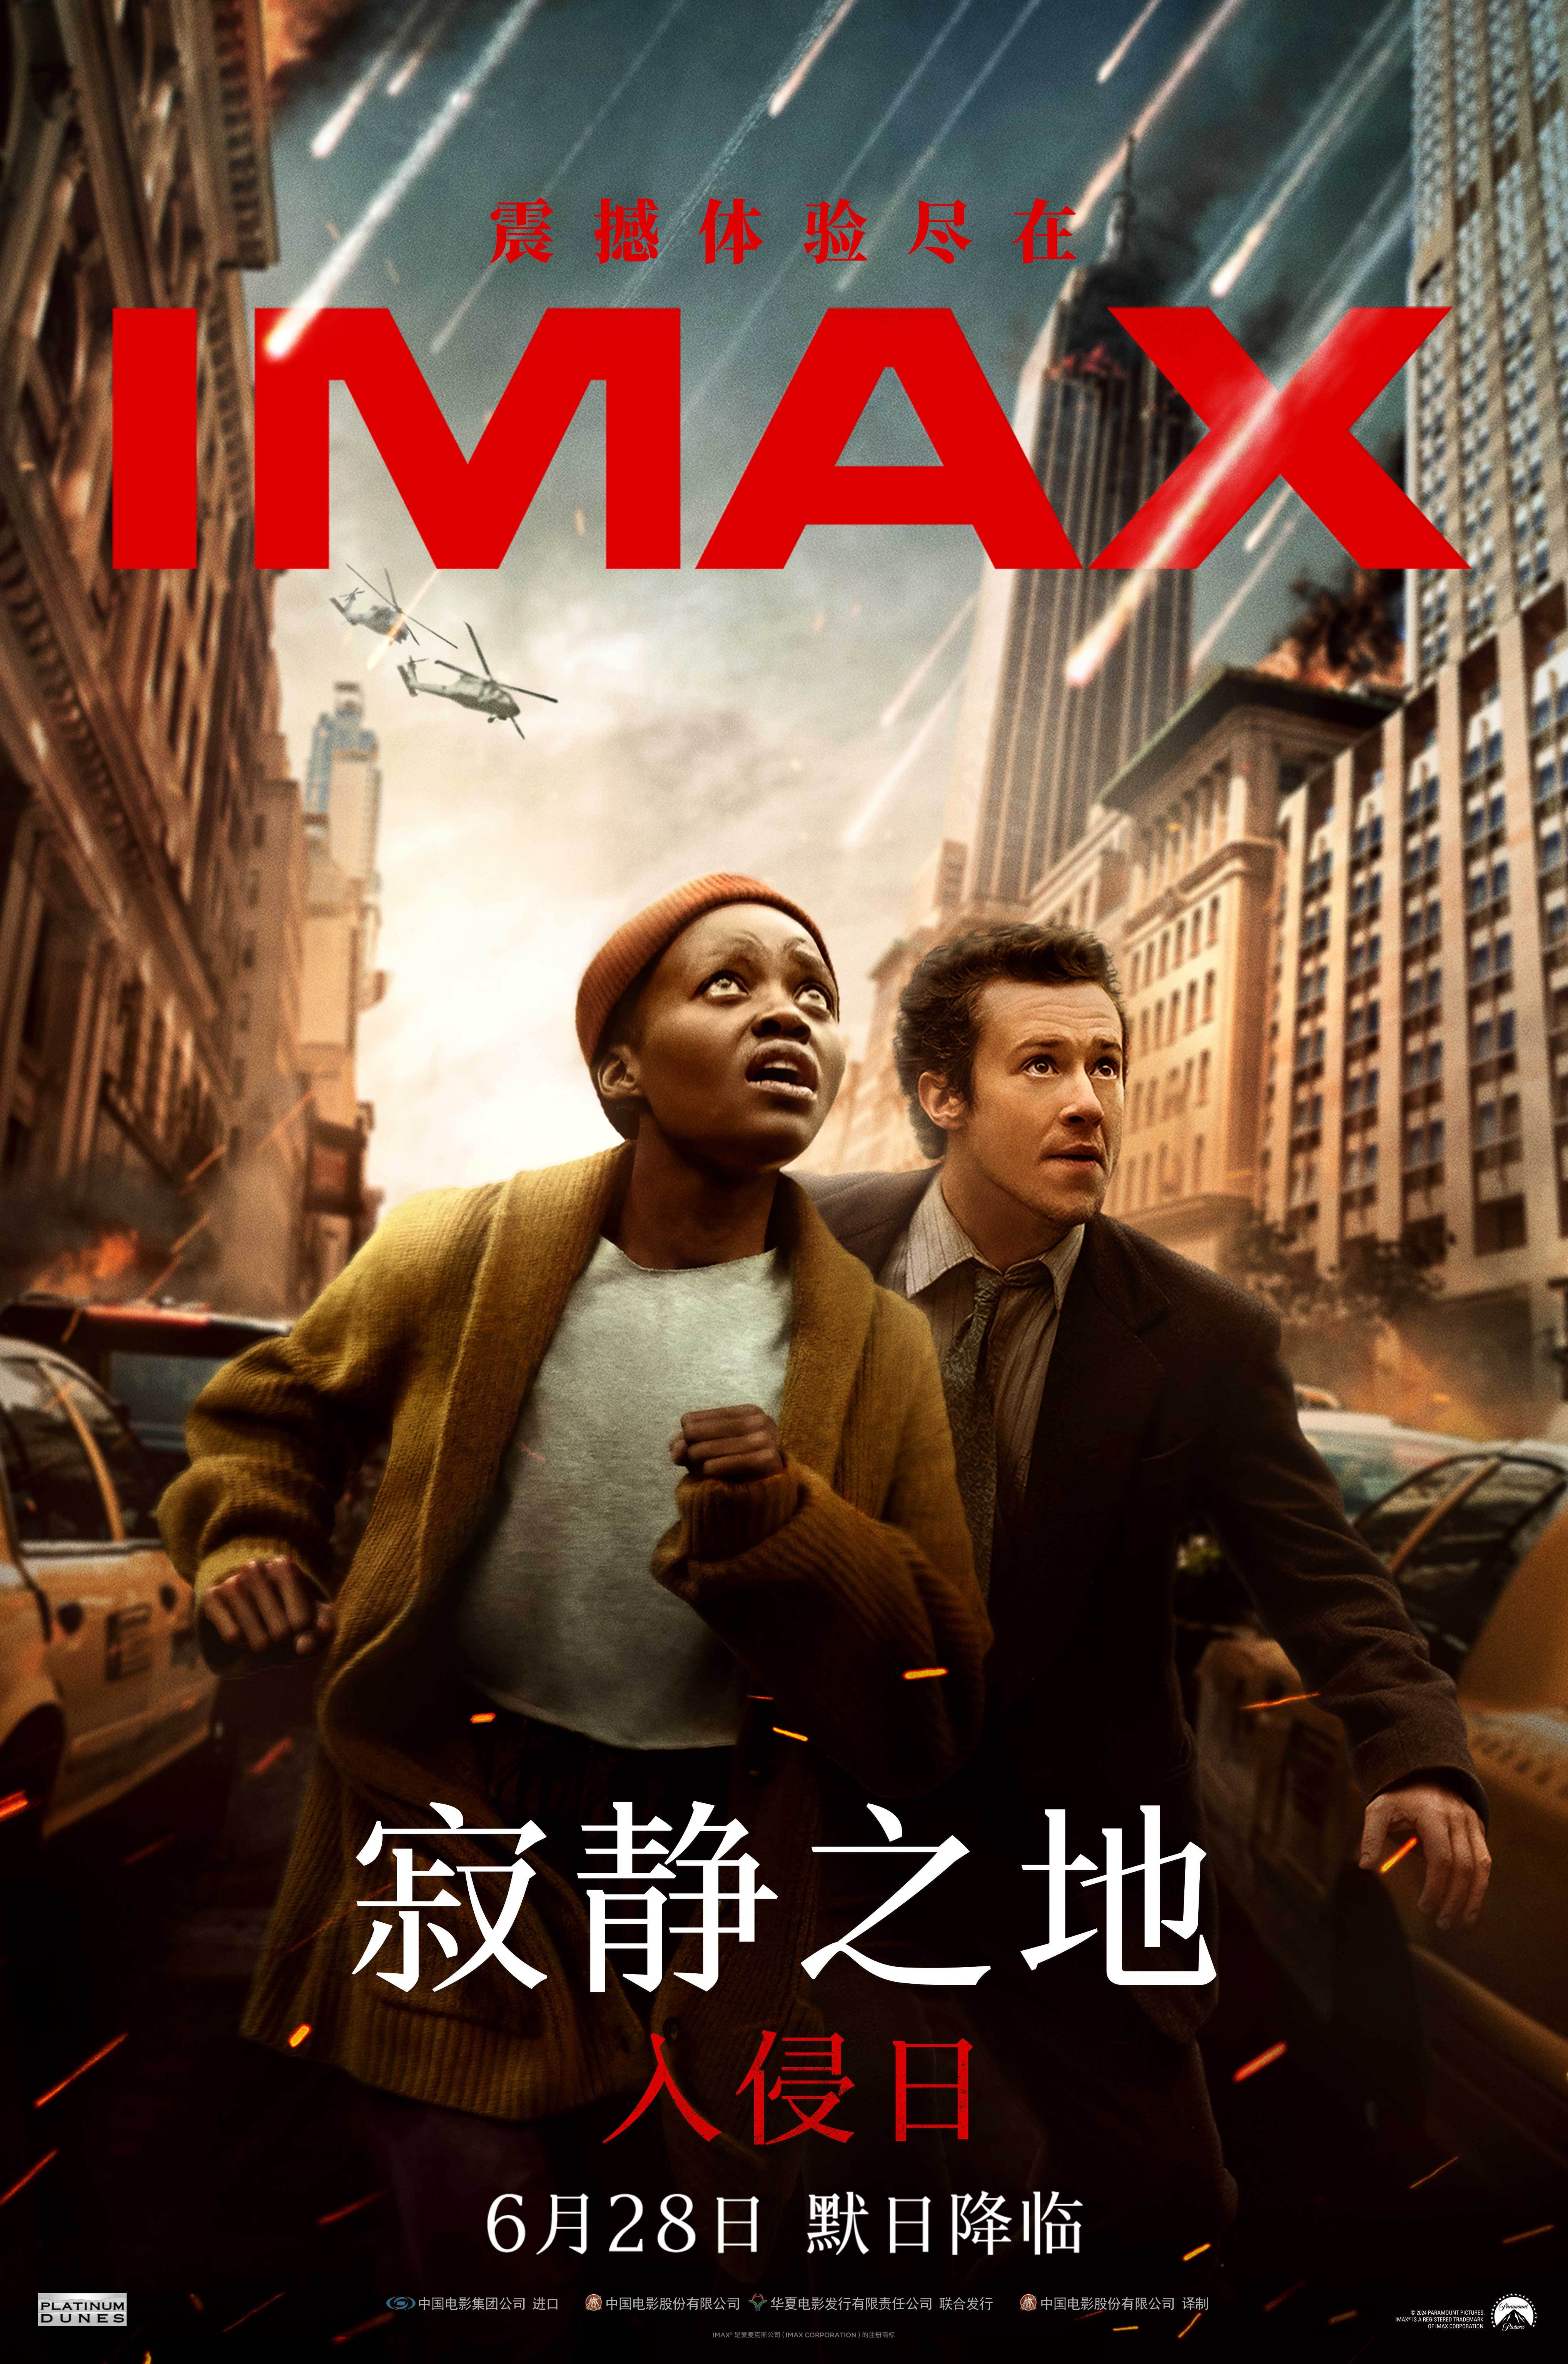 惊悚灾难片《寂静之地：入侵日》IMAX专属海报曝光 “默日”降临惊悚升级